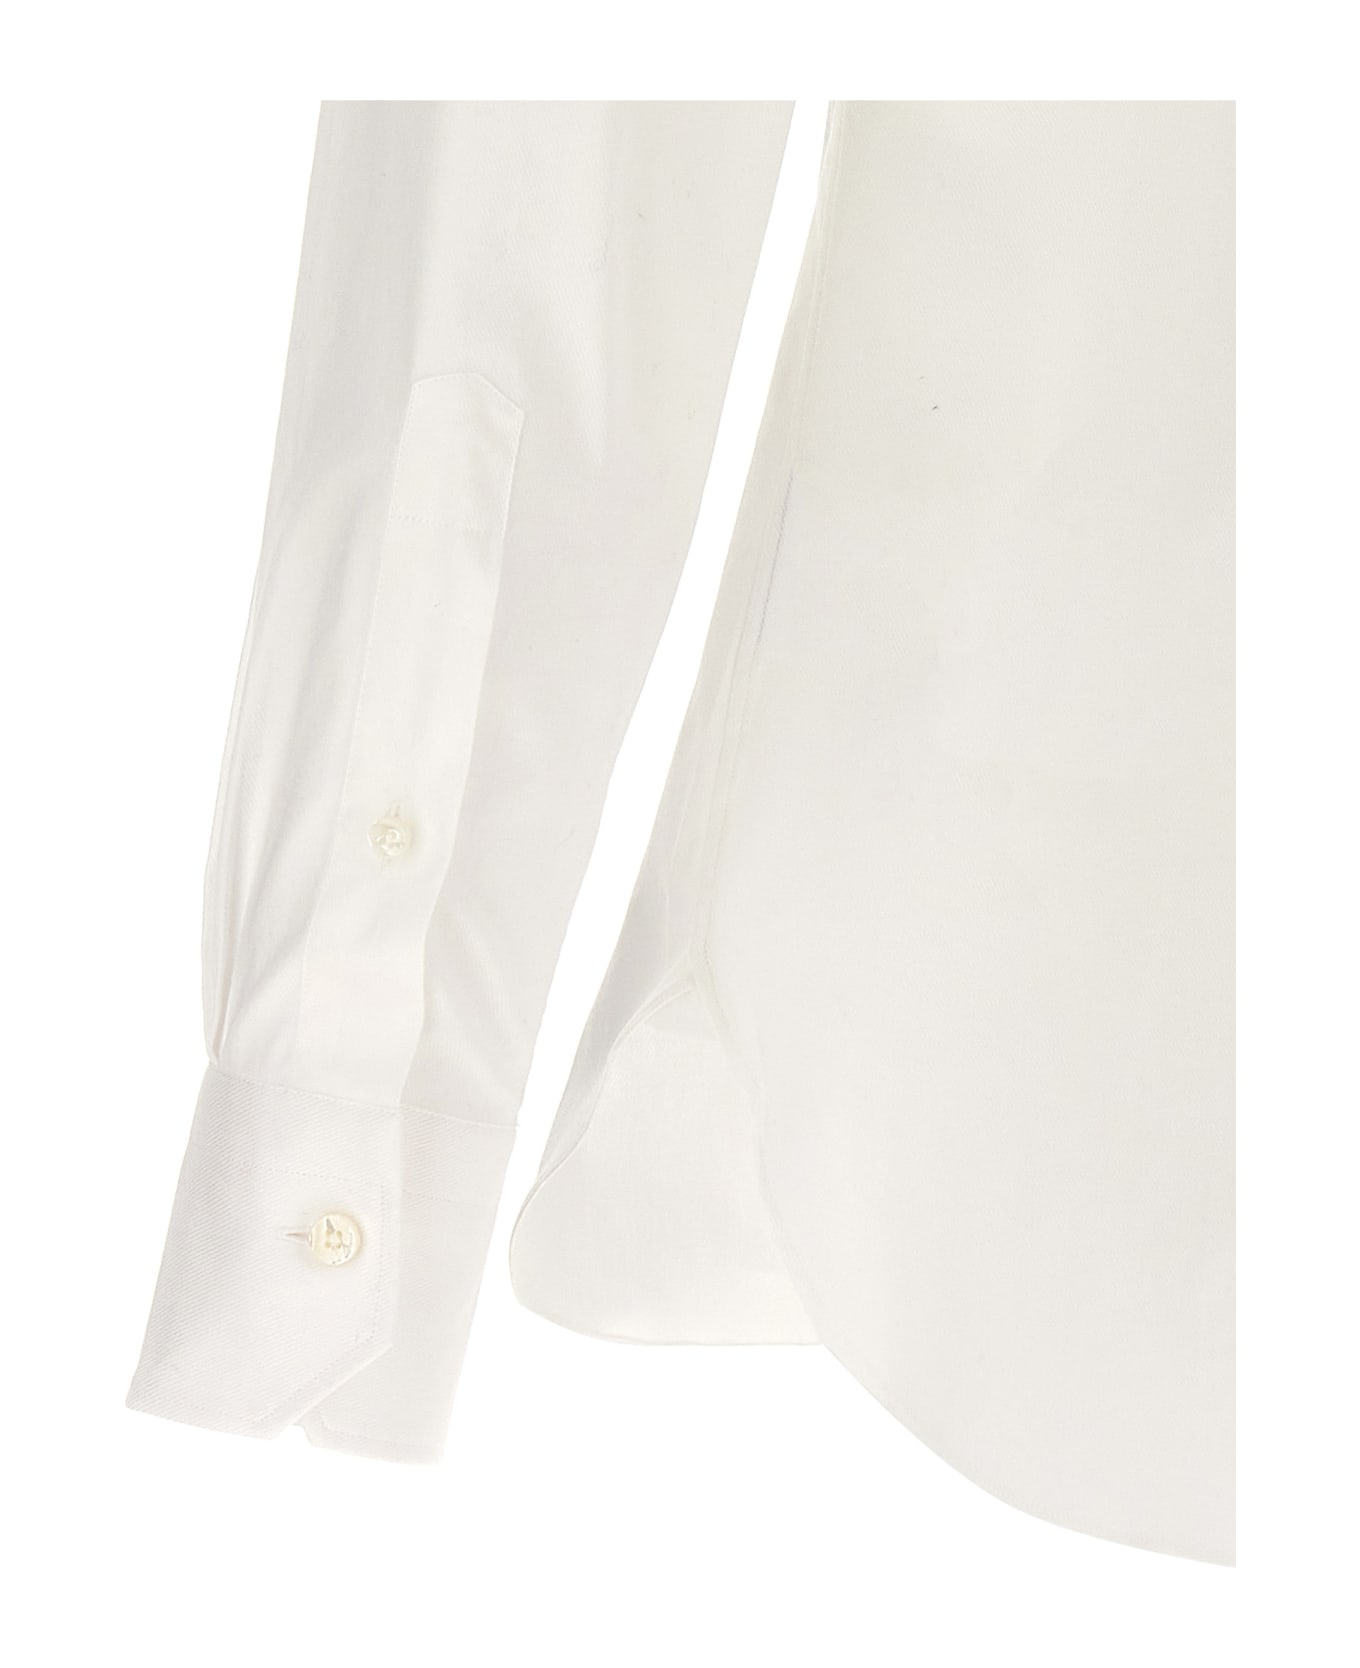 Zegna Stretch Cotton Shirt - White シャツ